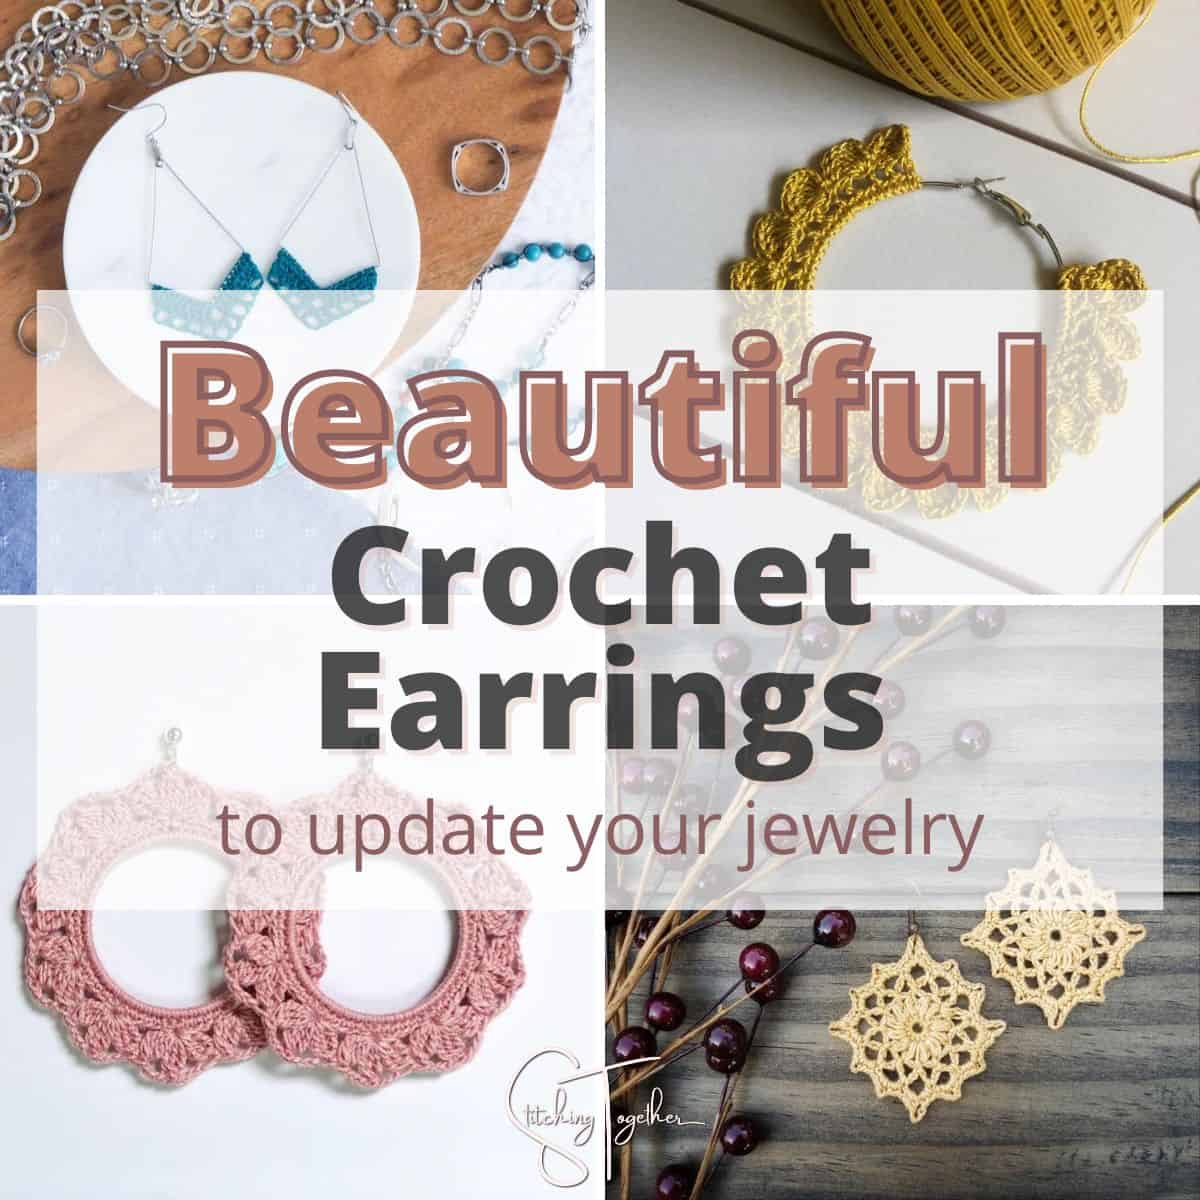 Crochet Earrings Pattern Skull, Halloween Earrings, Crochet Jewelry Pattern,  Easy Crochet Pattern, Diy Jewelry Gift - Etsy